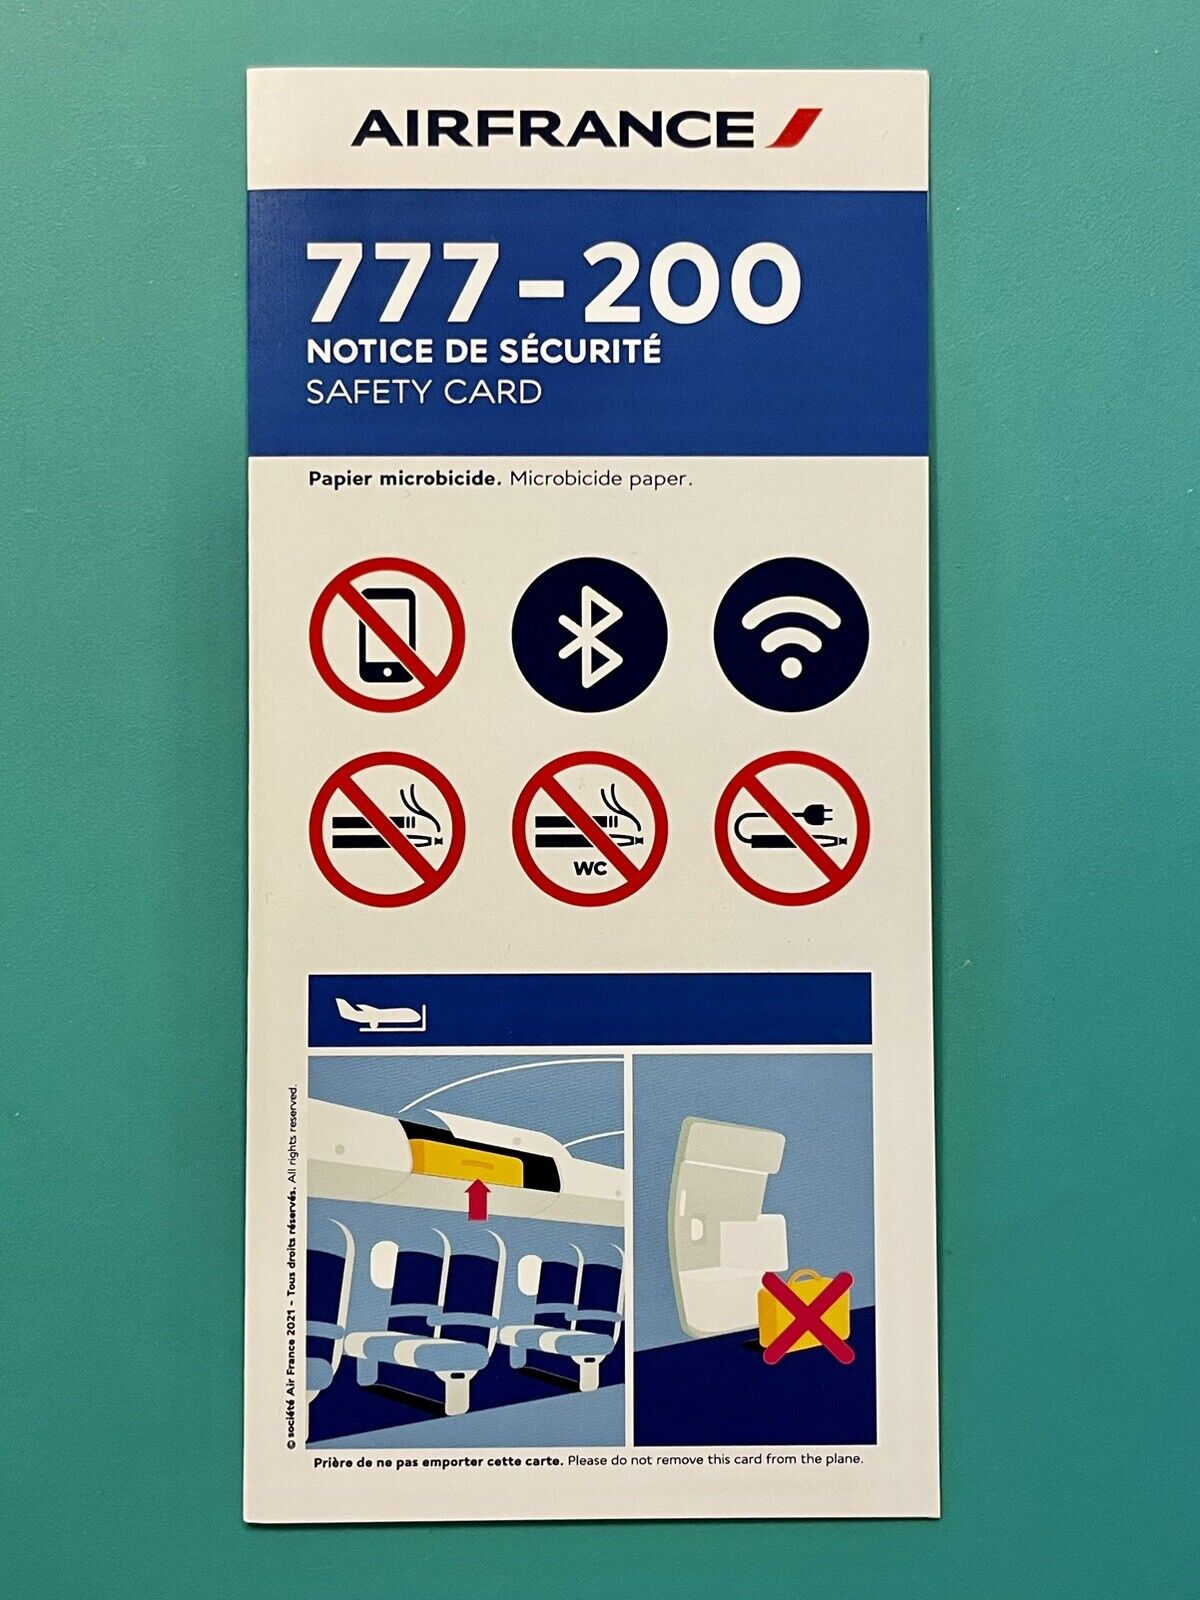 2022 AIR FRANCE SAFETY CARD —777-200